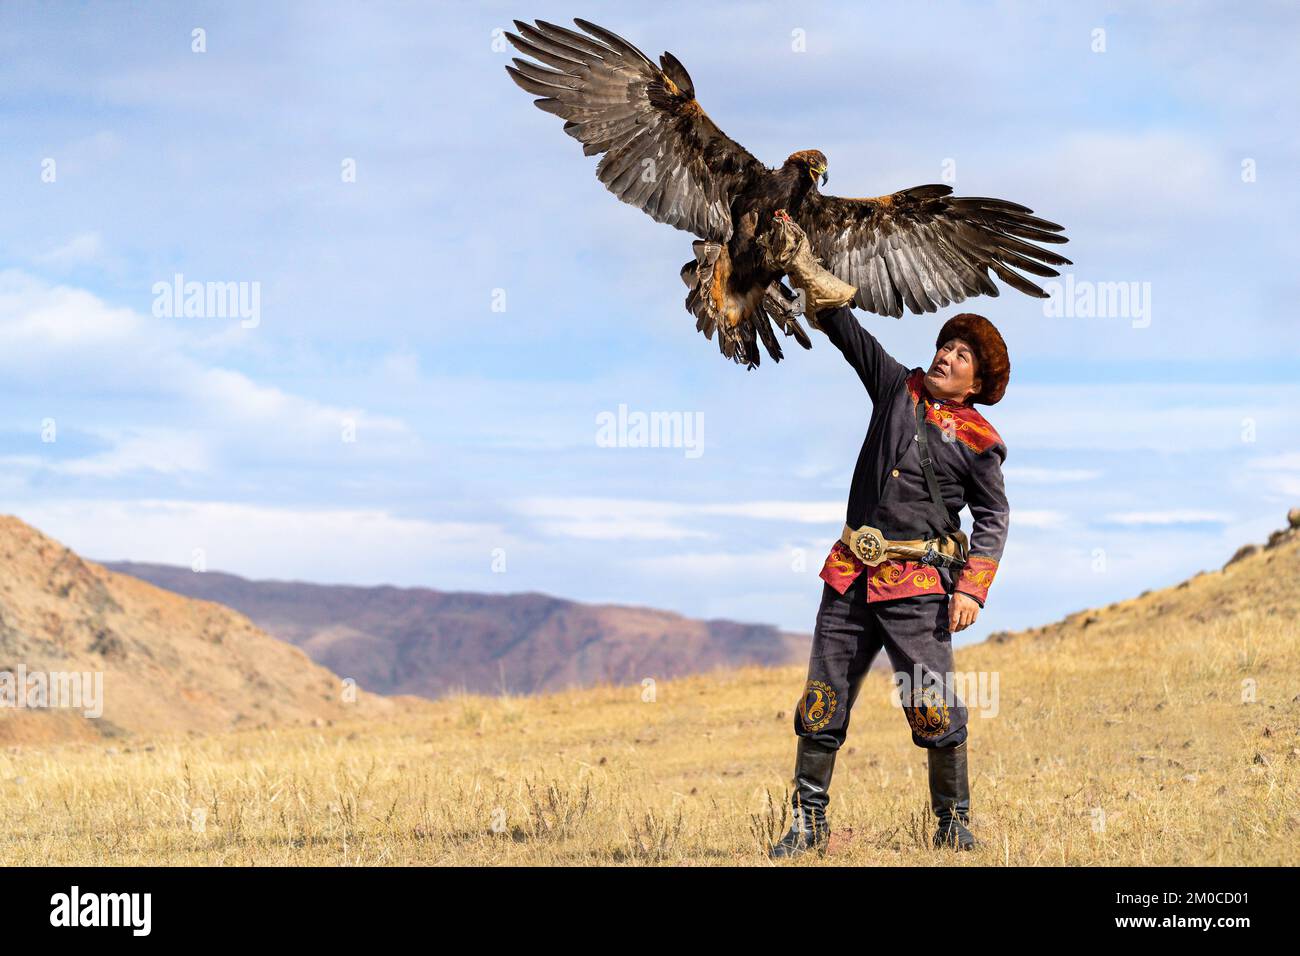 Cazador de águilas y su águila dorada en Issyk Kul, Kirguistán Foto de stock